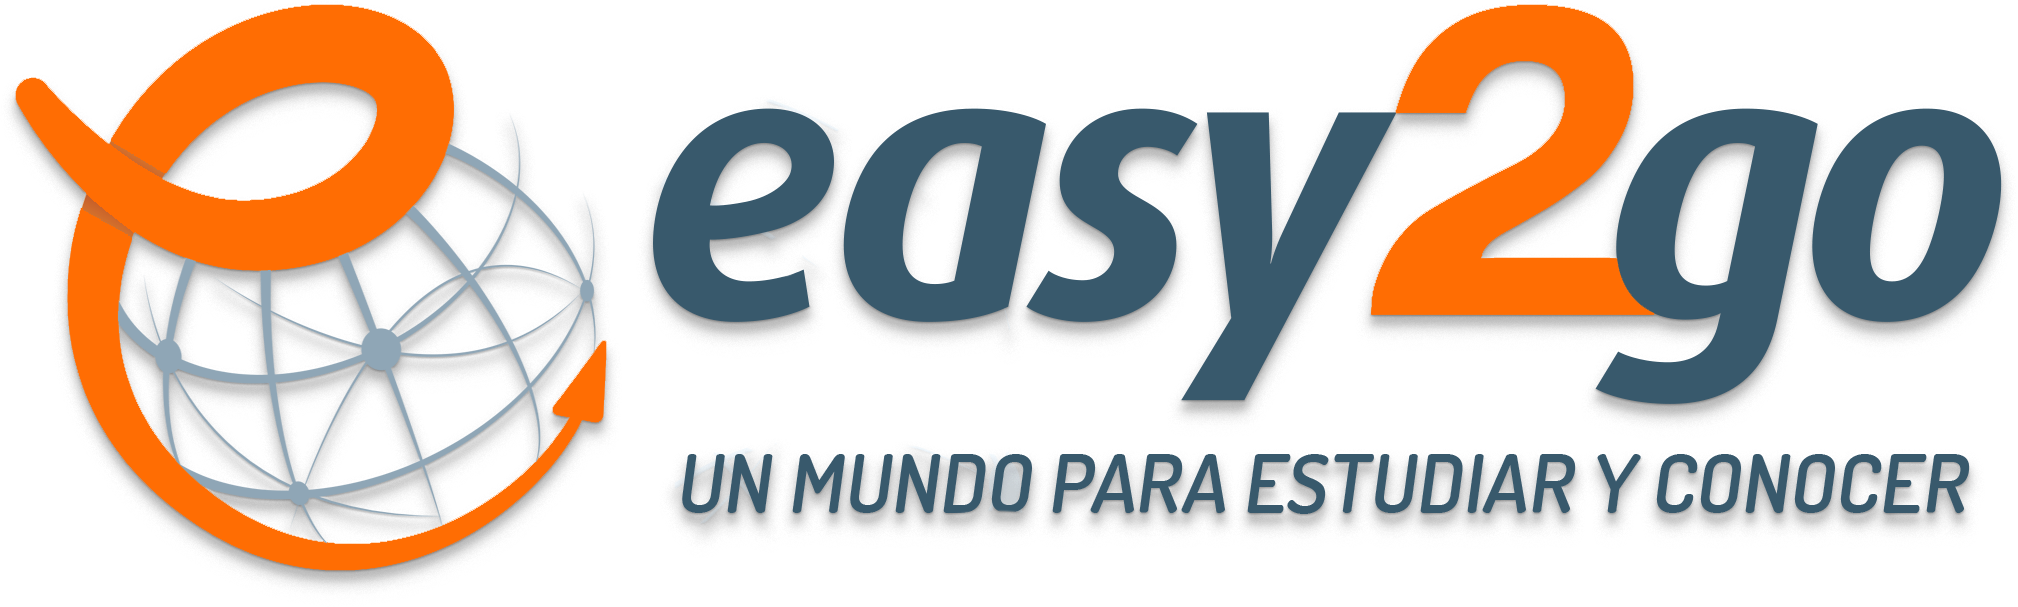 logo-easy2go